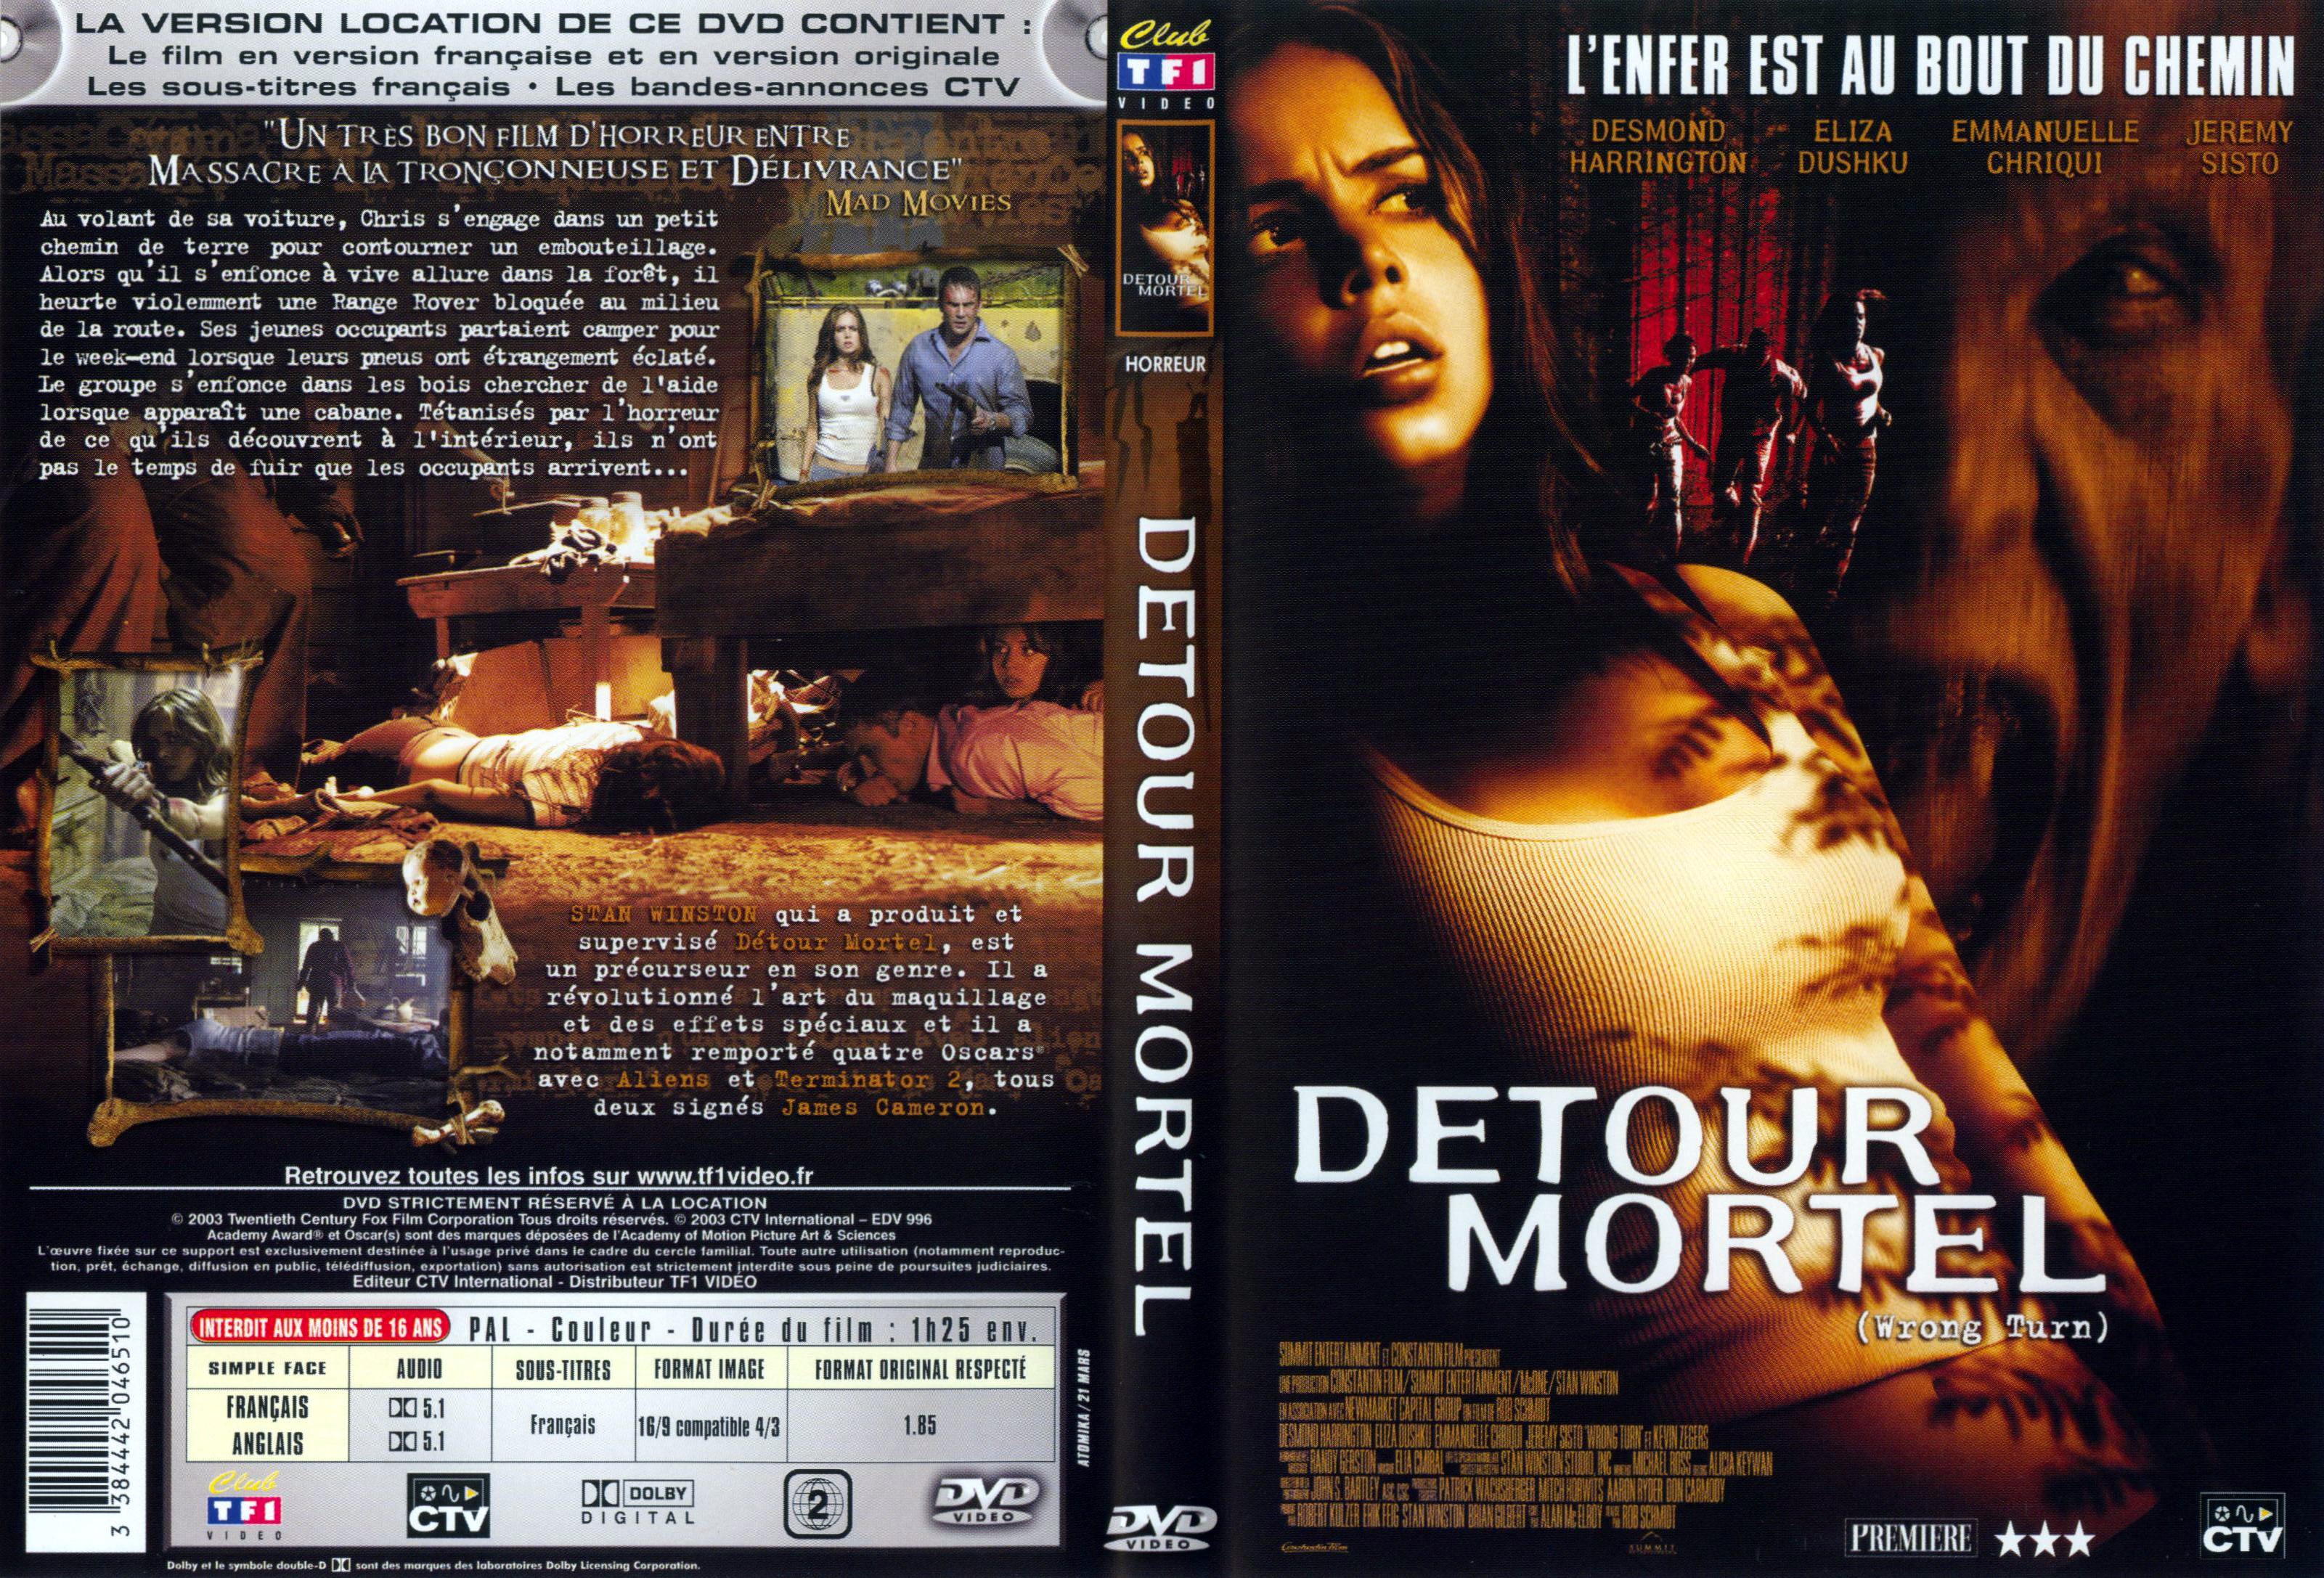 Jaquette DVD Detour mortel